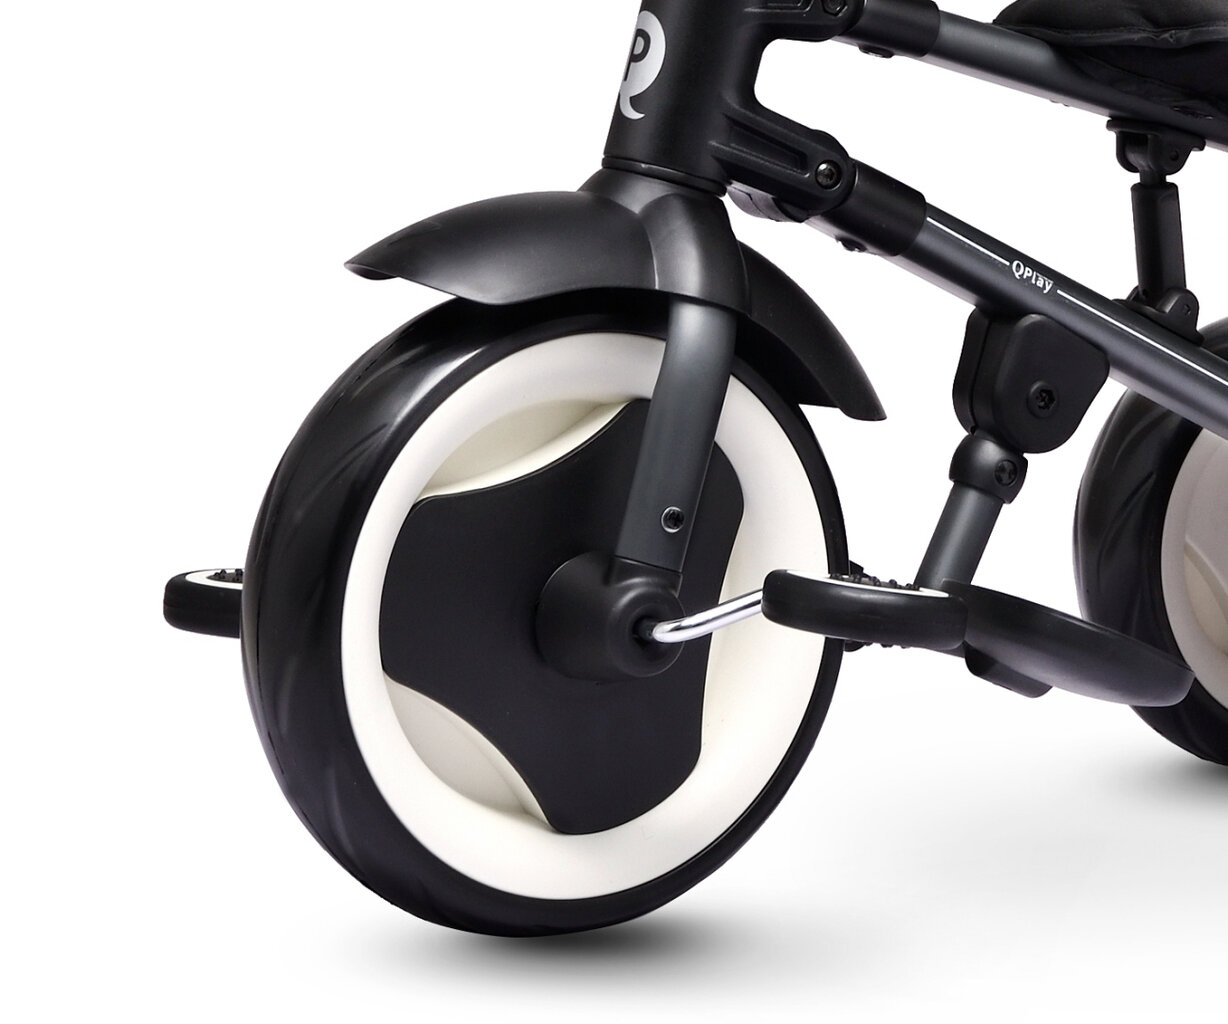 Sulankstomas dviratis, 3 ratai, vaikiškas, Qplay Rito, spalva: juoda (3839) 4464 kaina ir informacija | Triratukai | pigu.lt